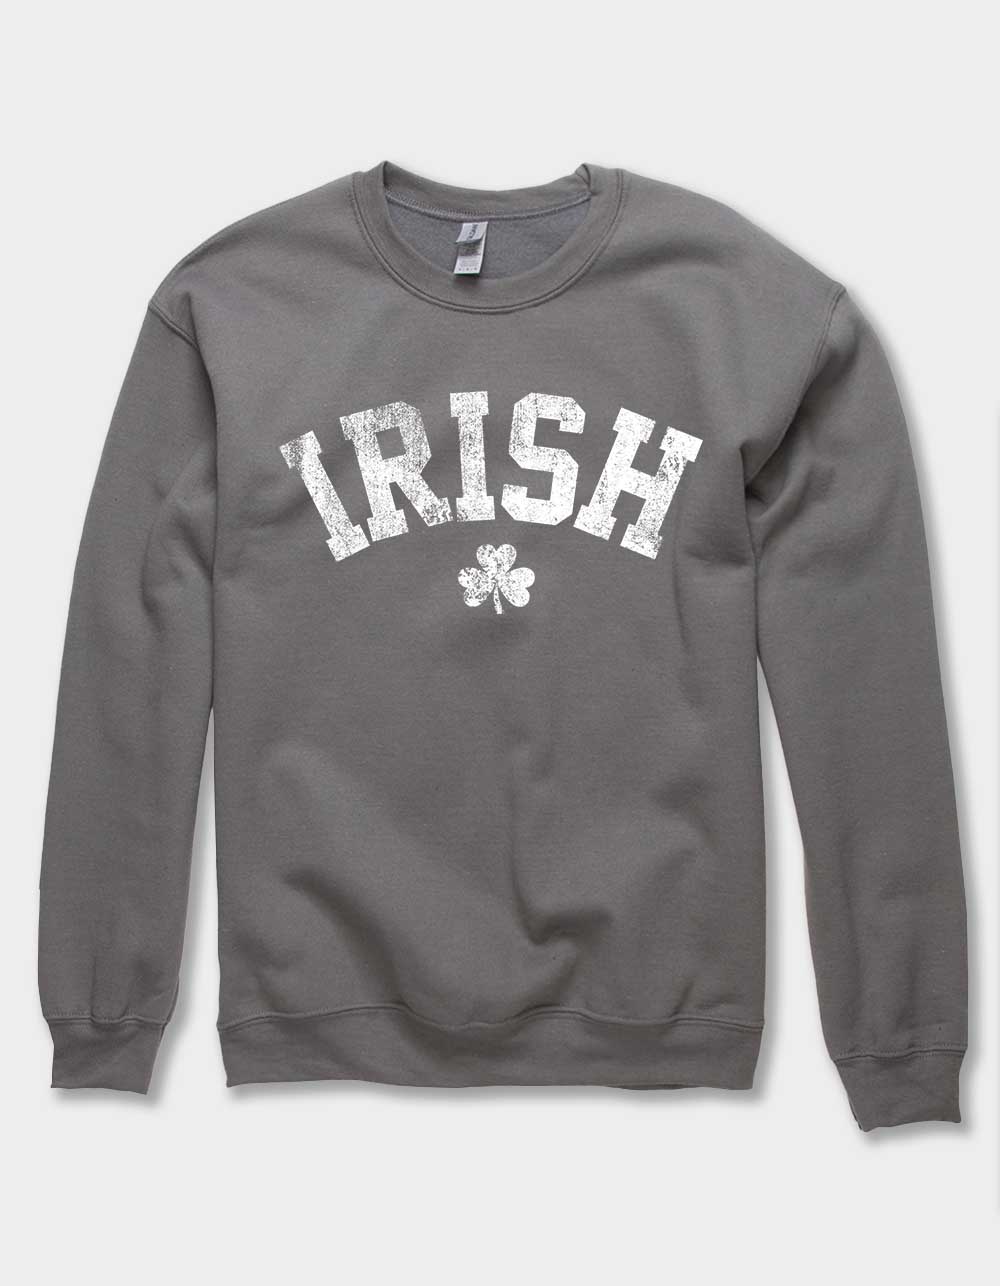 IRELAND Collegiate Irish Distressed Unisex Crewneck Sweatshirt